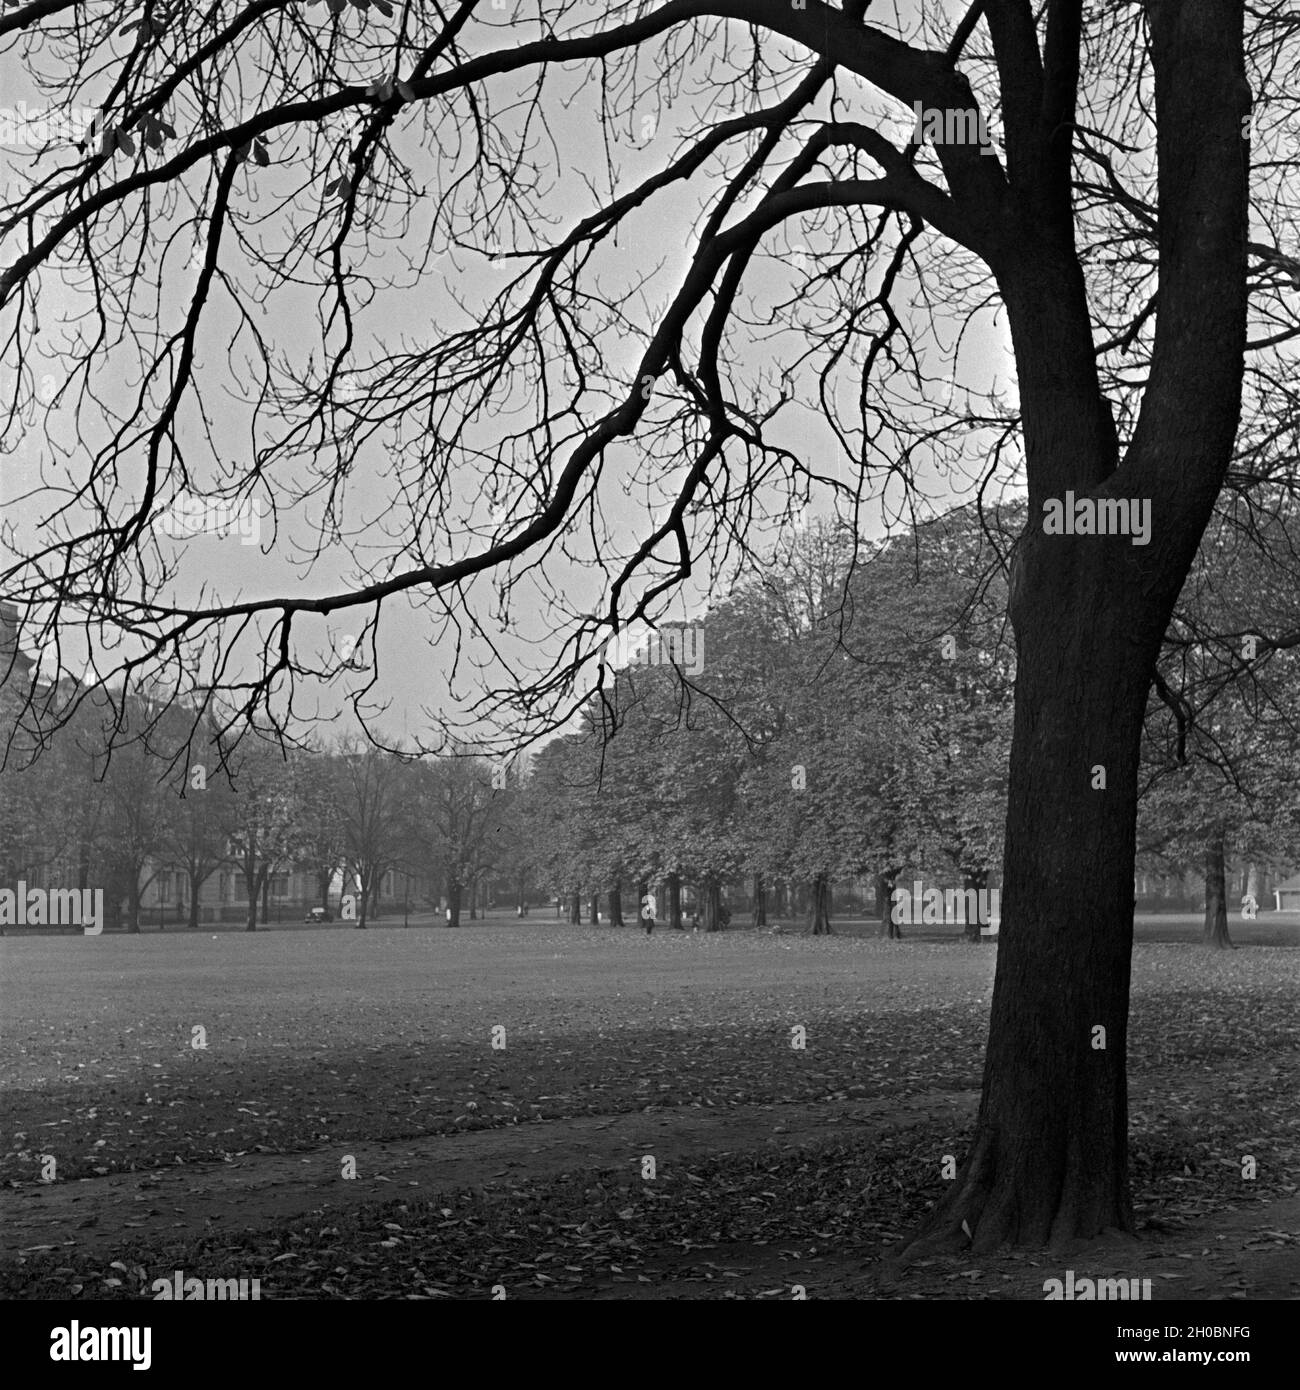 Impressione Herbstliche aus einem Grüngürtel in einer deutschen Stadt, Deutschland 1930er Jahre. Autunno impressione di uno spazio verde urbano in una città tedesca, Germania 1930s. Foto Stock